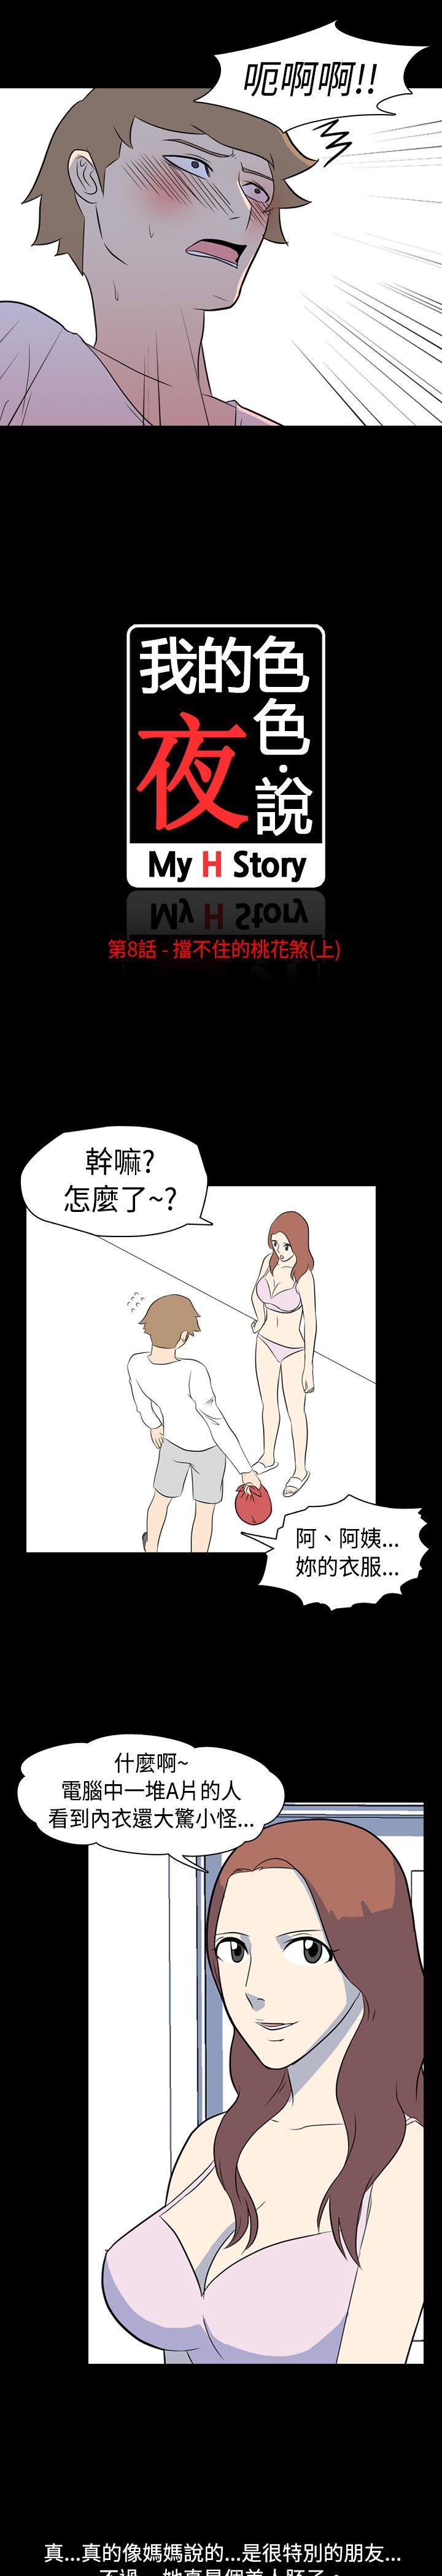 韩国污漫画 我的色色夜說 第8话-挡不住的桃花煞(上) 4